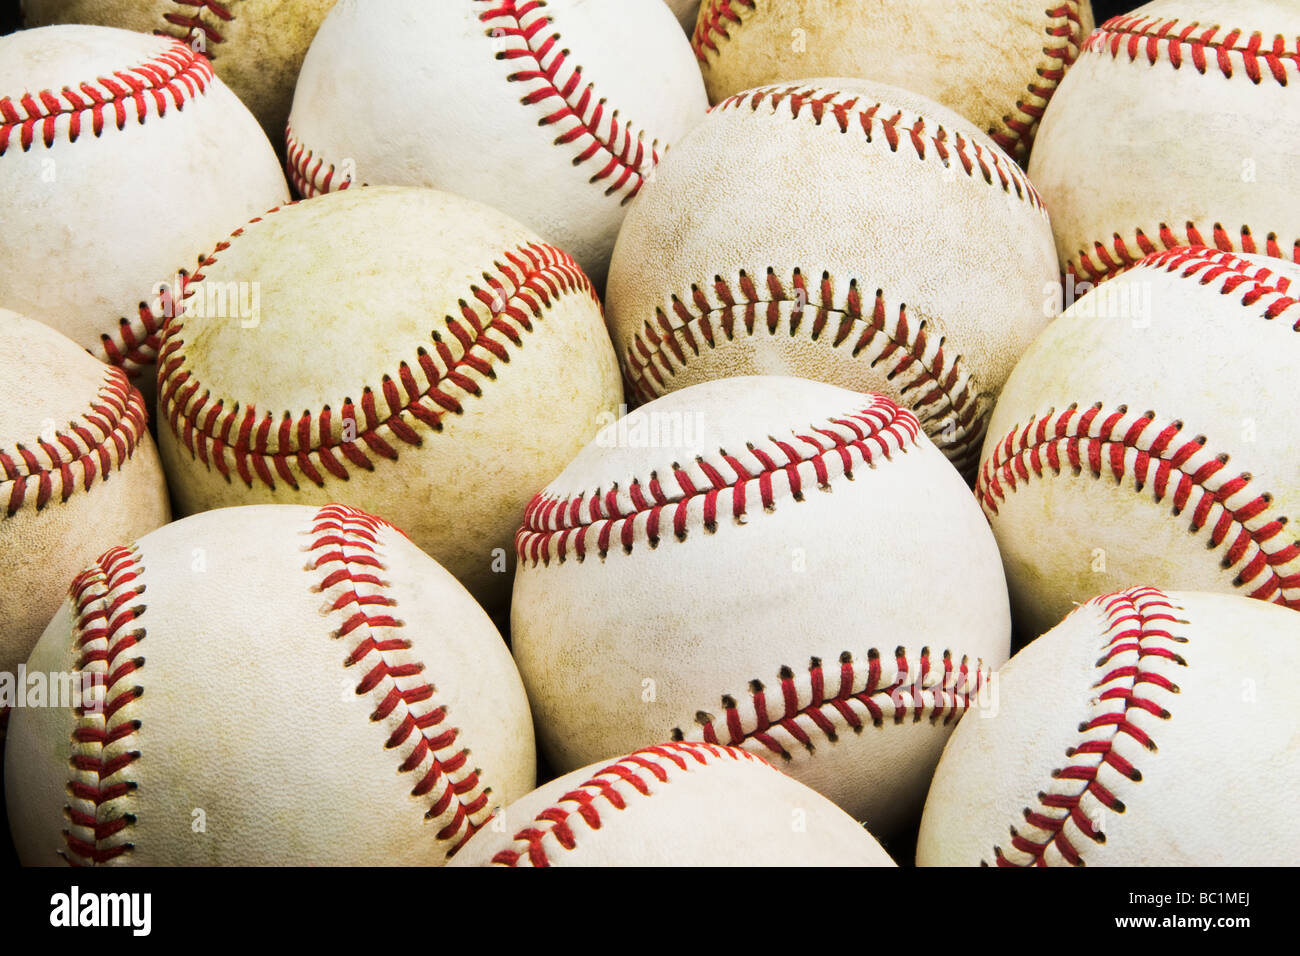 Verso il basso la vista frontale di un gruppo di impiegati baseballs indossati a stretto riempire le righe l'immagine intera Foto Stock